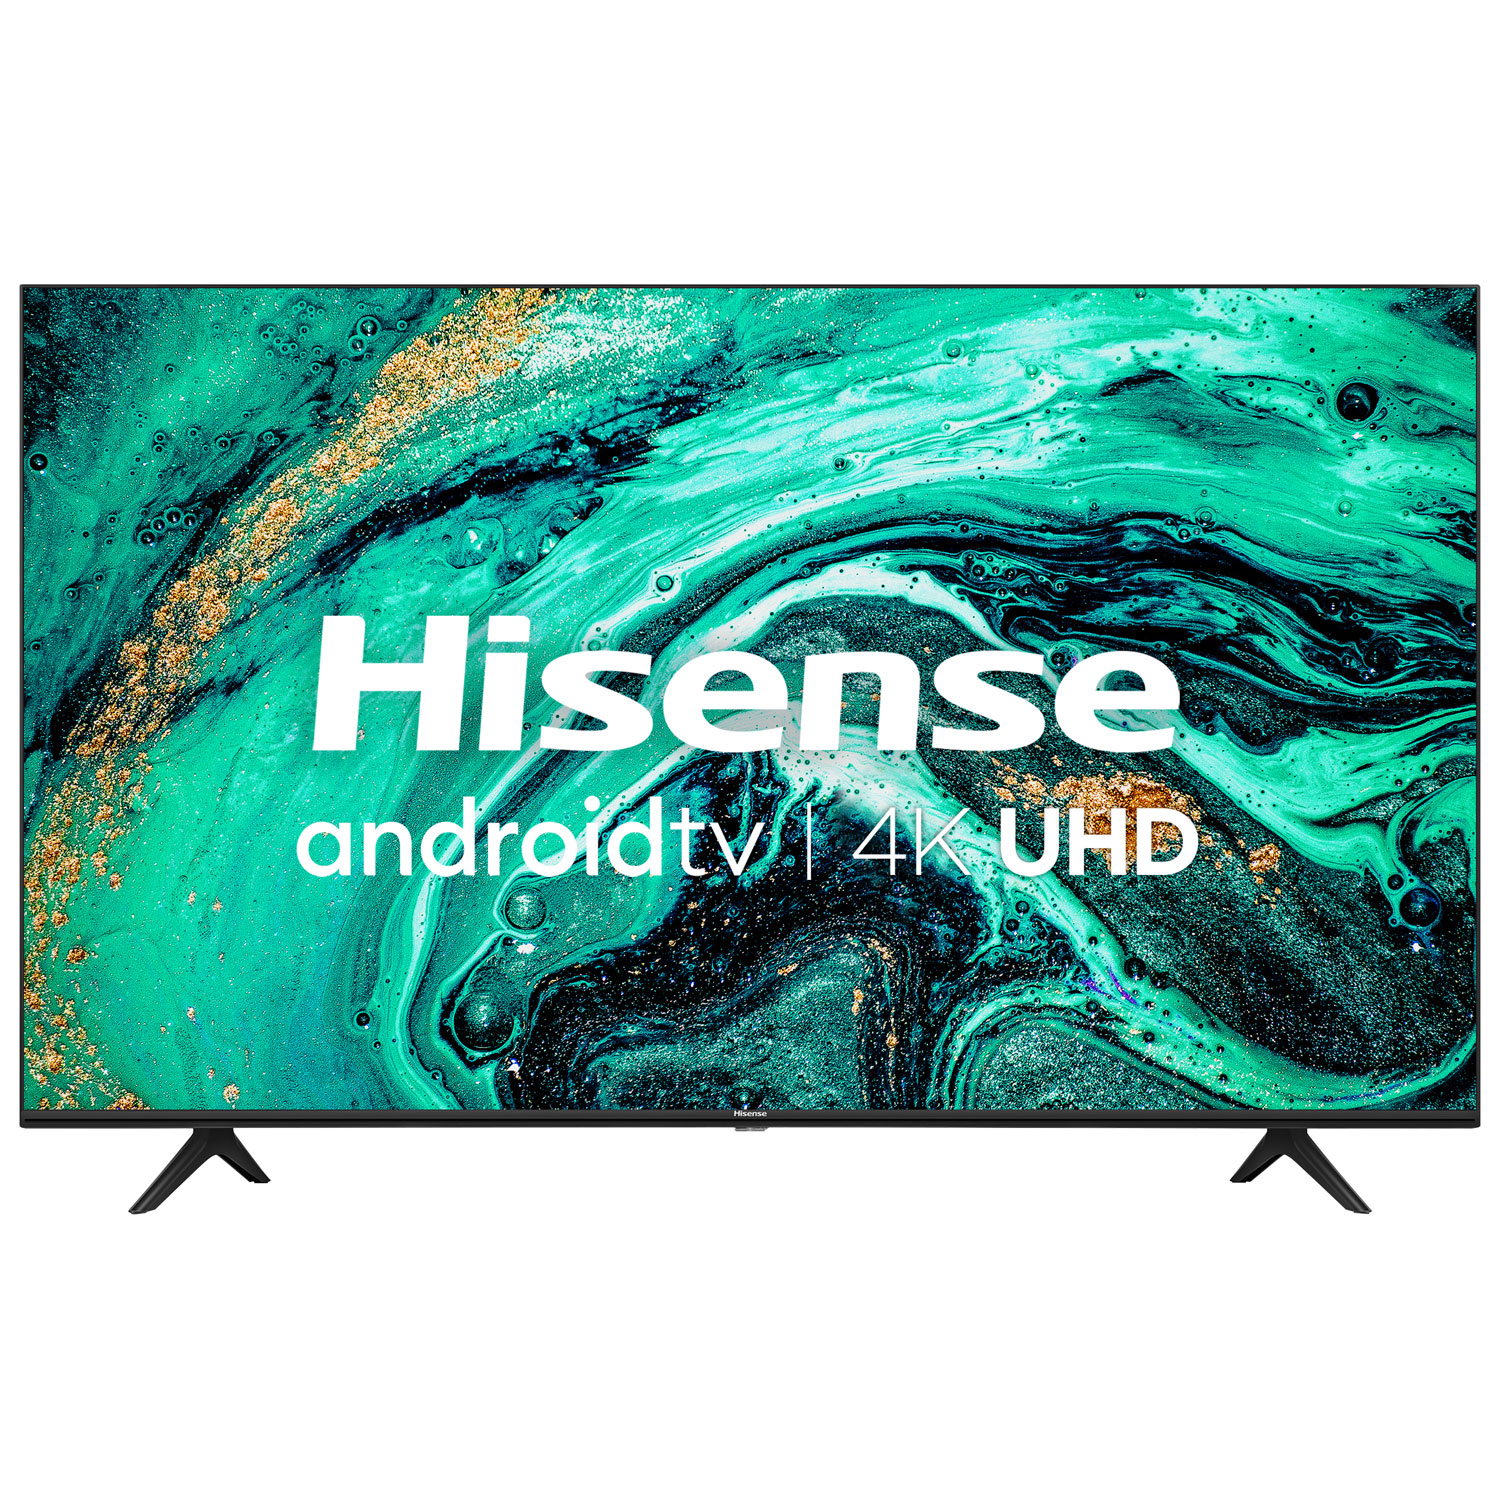 Hisense 58" 4K UHD HDR LED Android Smart TV (58H78G) - 2020